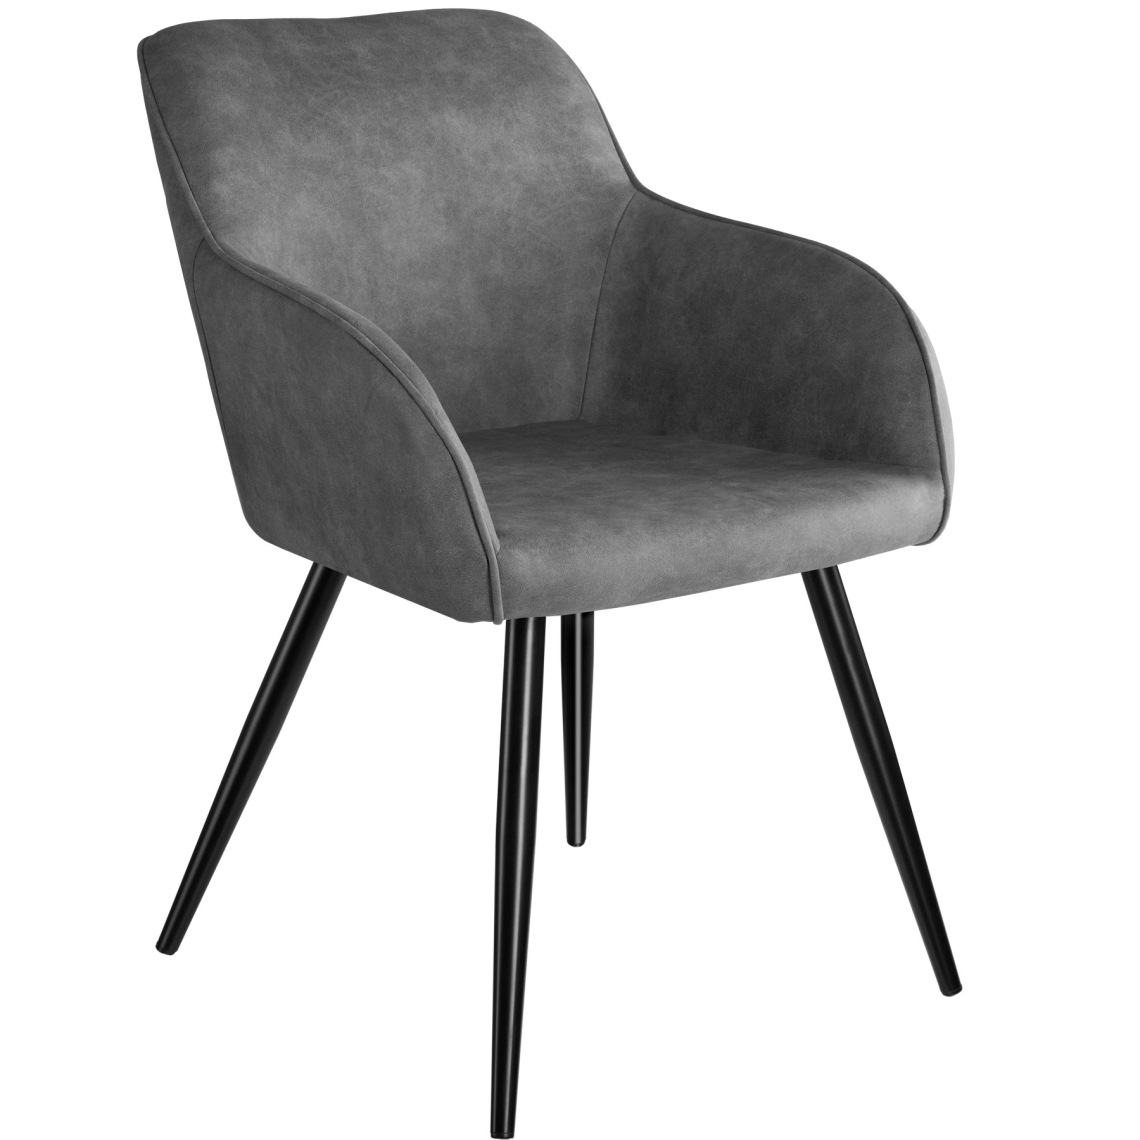 Tectake - Chaise Marilyn tissu - gris/noir - Chaises